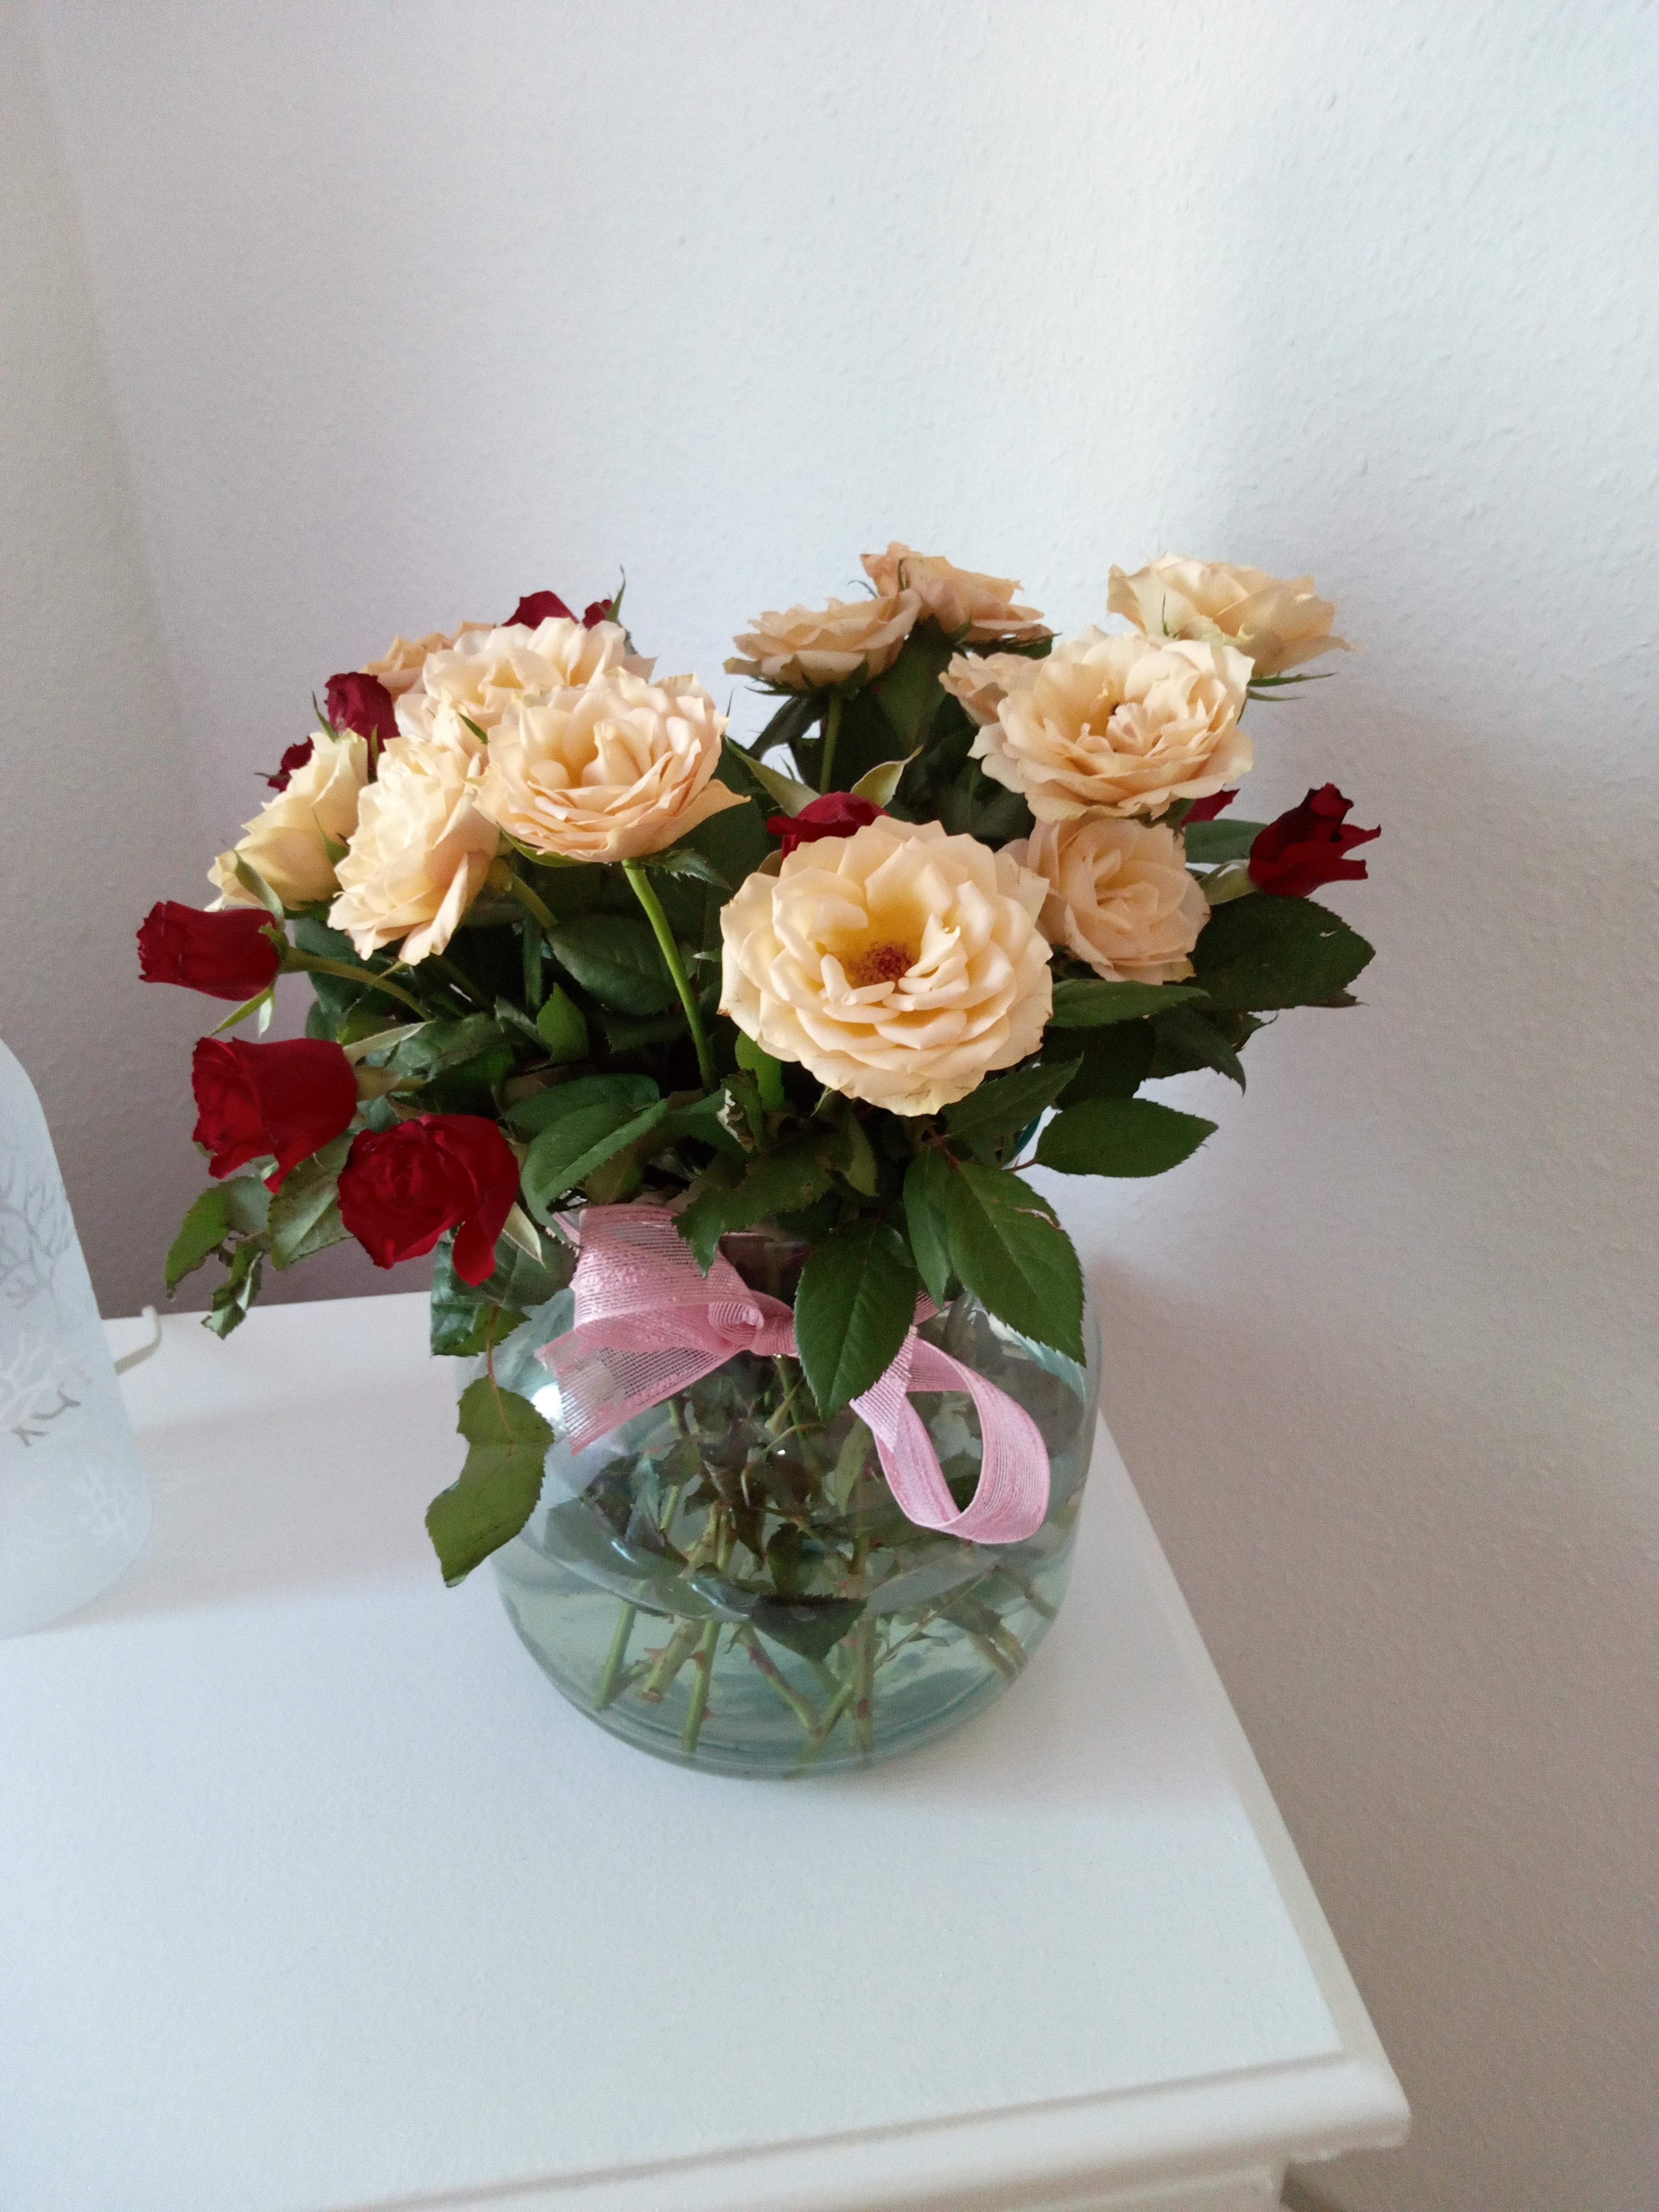 Das sind meine schönen Blumen die ich auf dem Tisch stehen habe